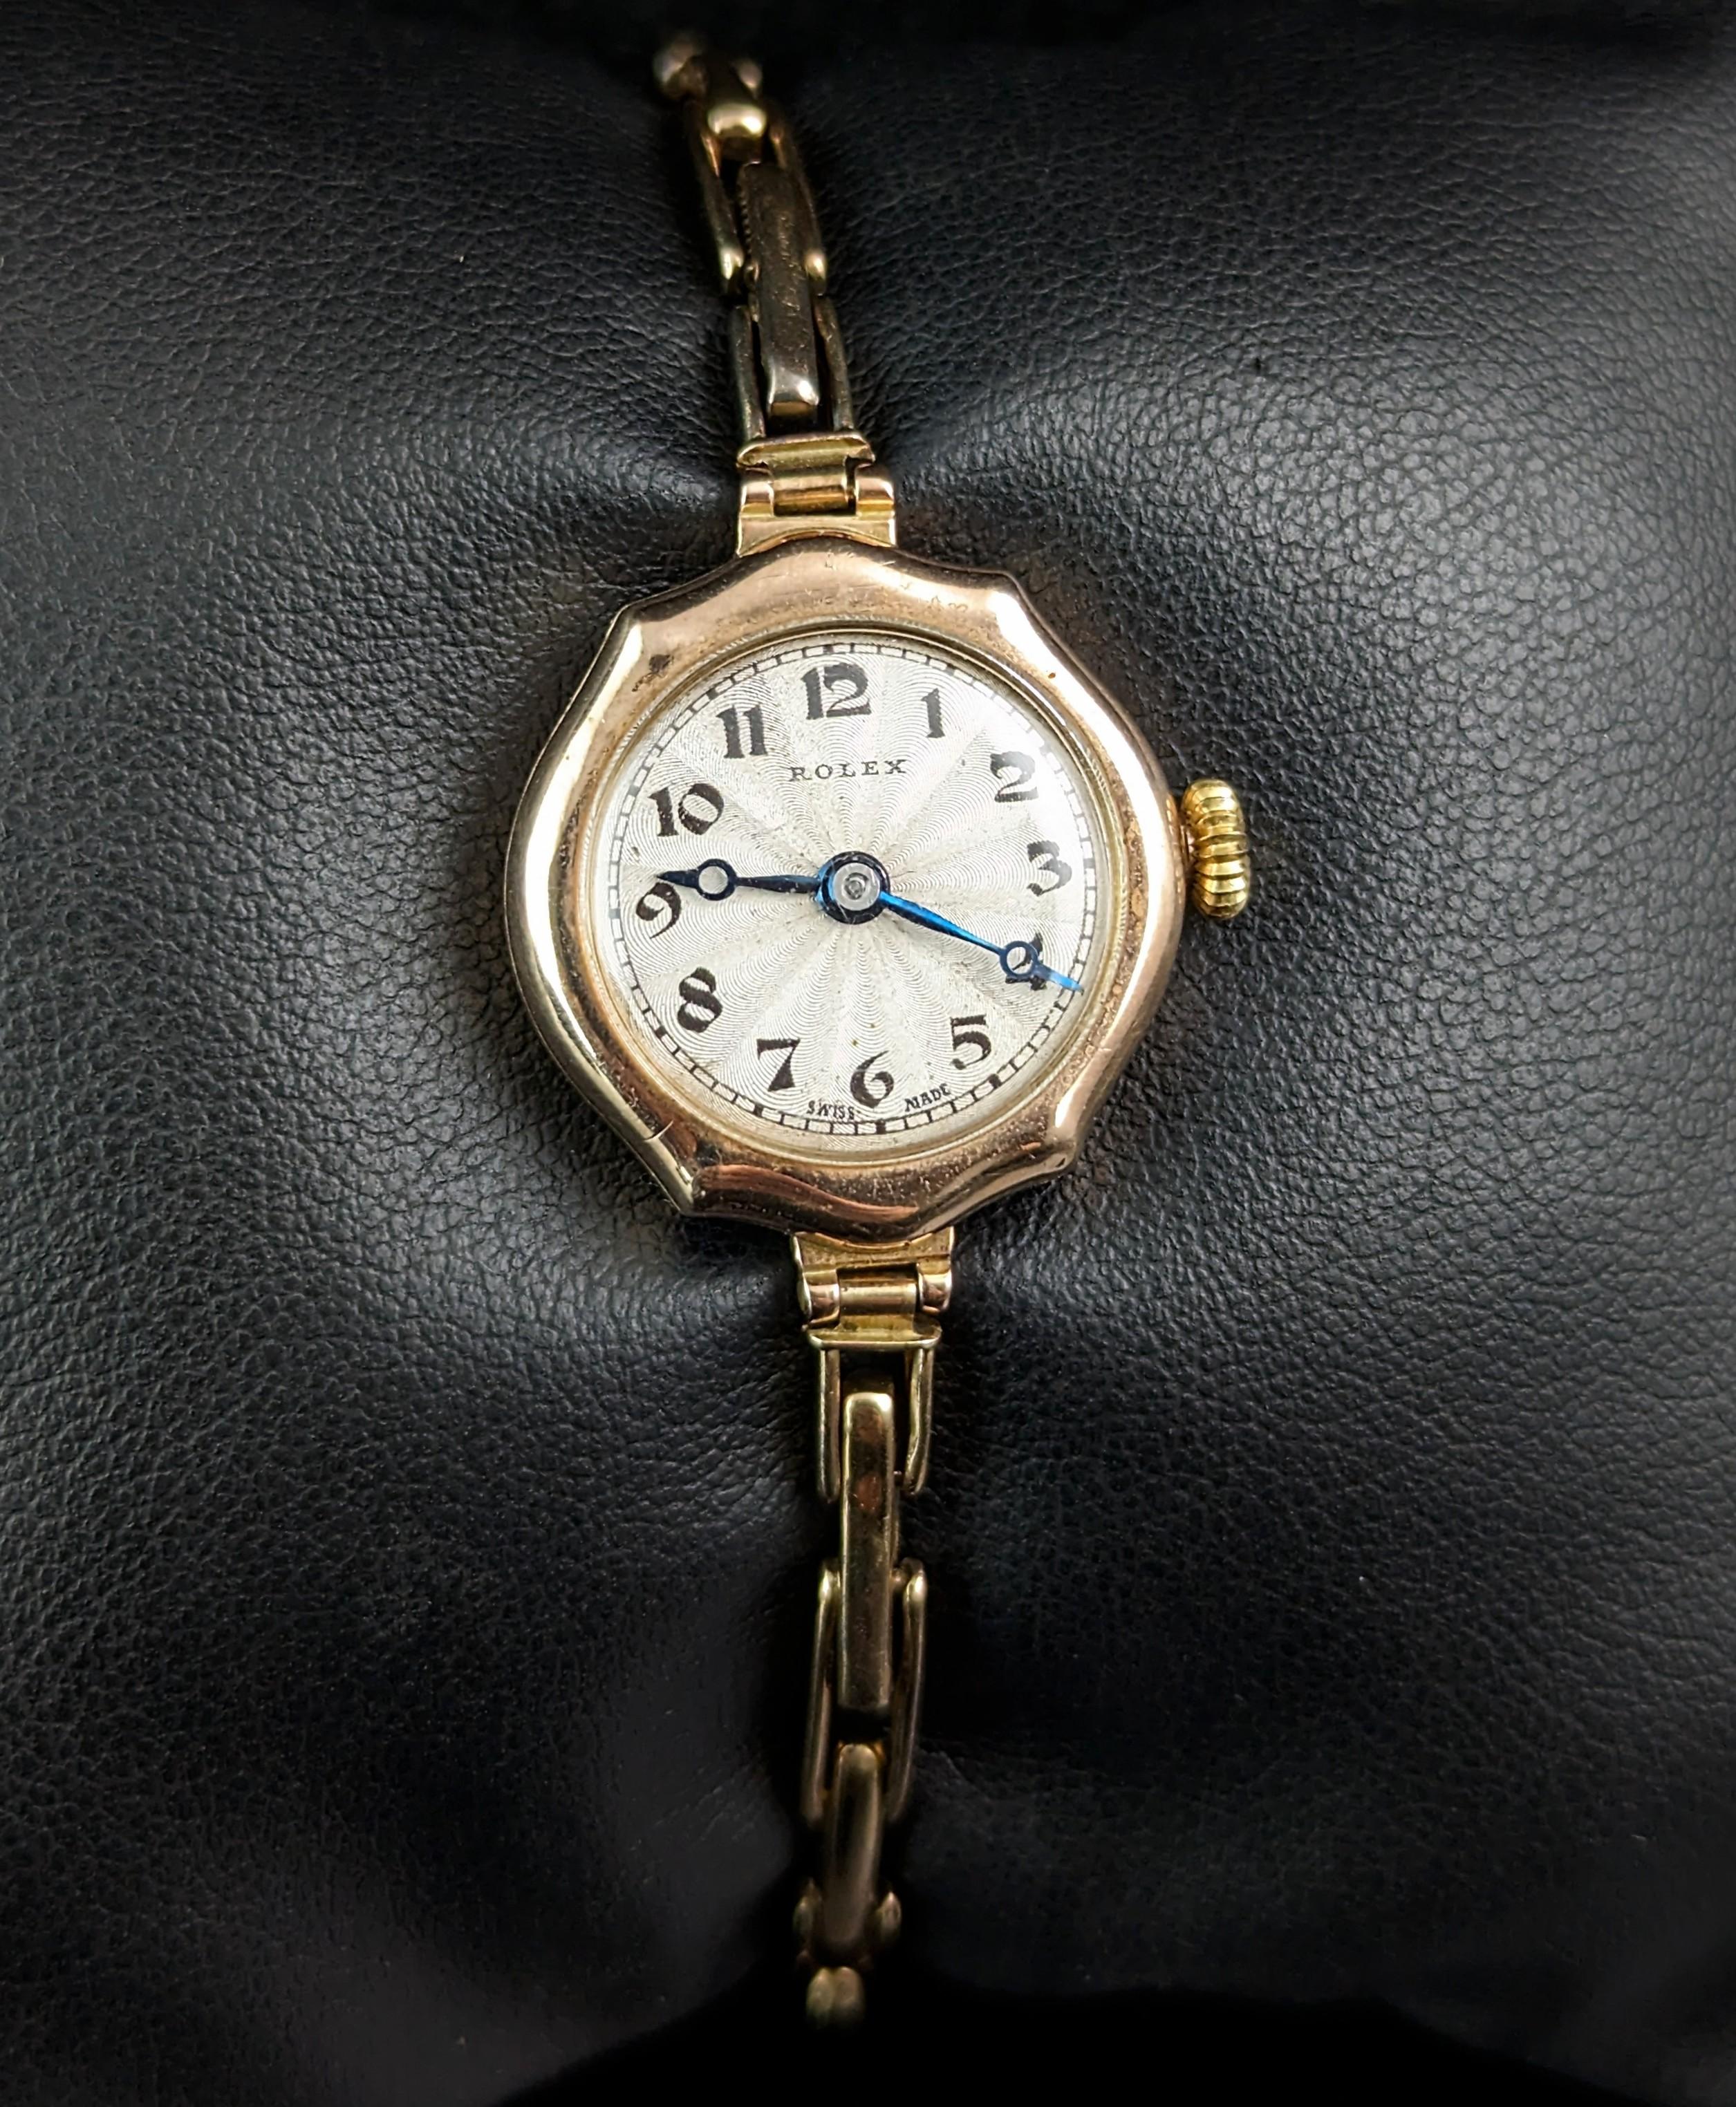 Cette montre-bracelet Rolex vintage pour femme en or 9ct est la montre classique par excellence.

Elle présente un boîtier hexagonal en or 9ct marqué sur le boîtier extérieur et poinçonné à l'intérieur. La montre a un cadran argenté et porte la